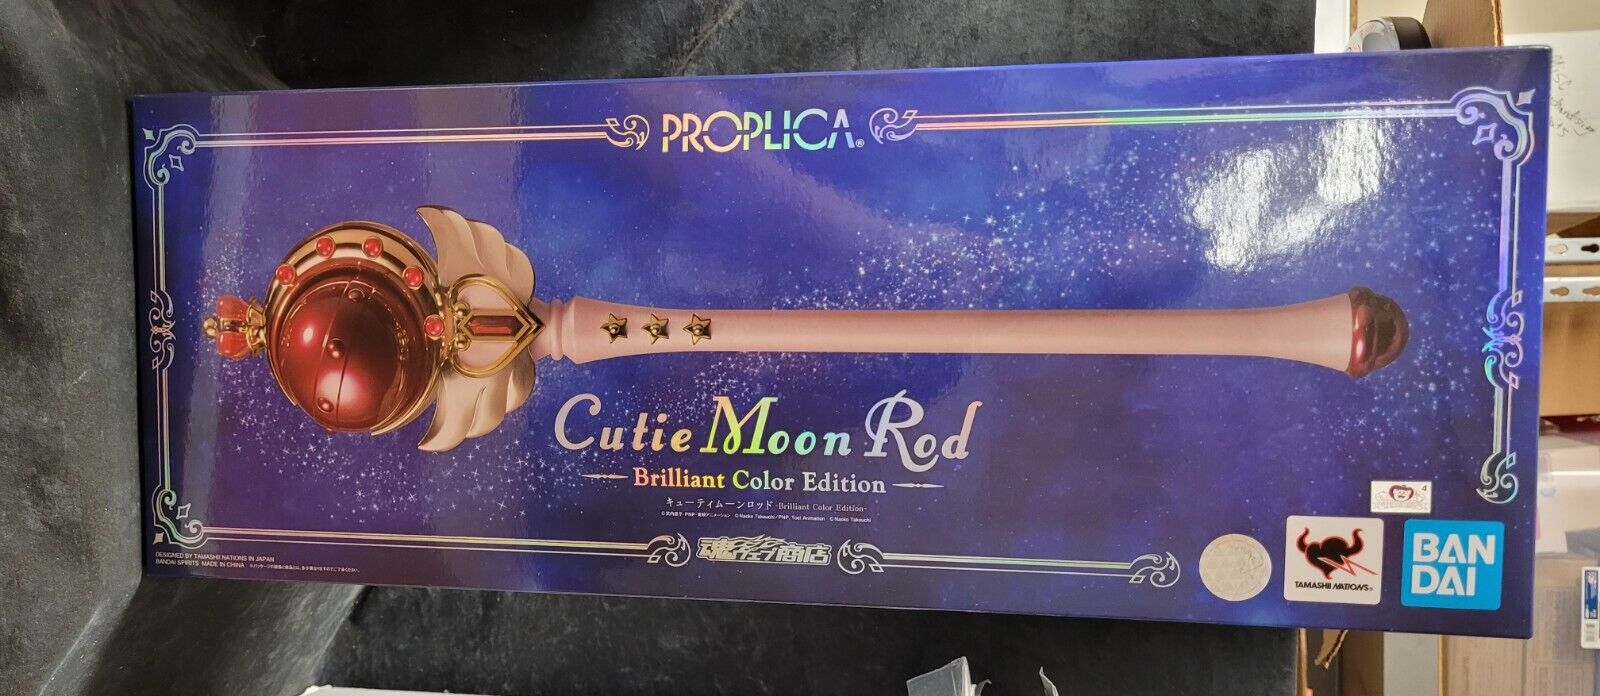 Bandai PROPLICA Sailor Moon: Cutie Moon Rod Brilliant Color Edition*